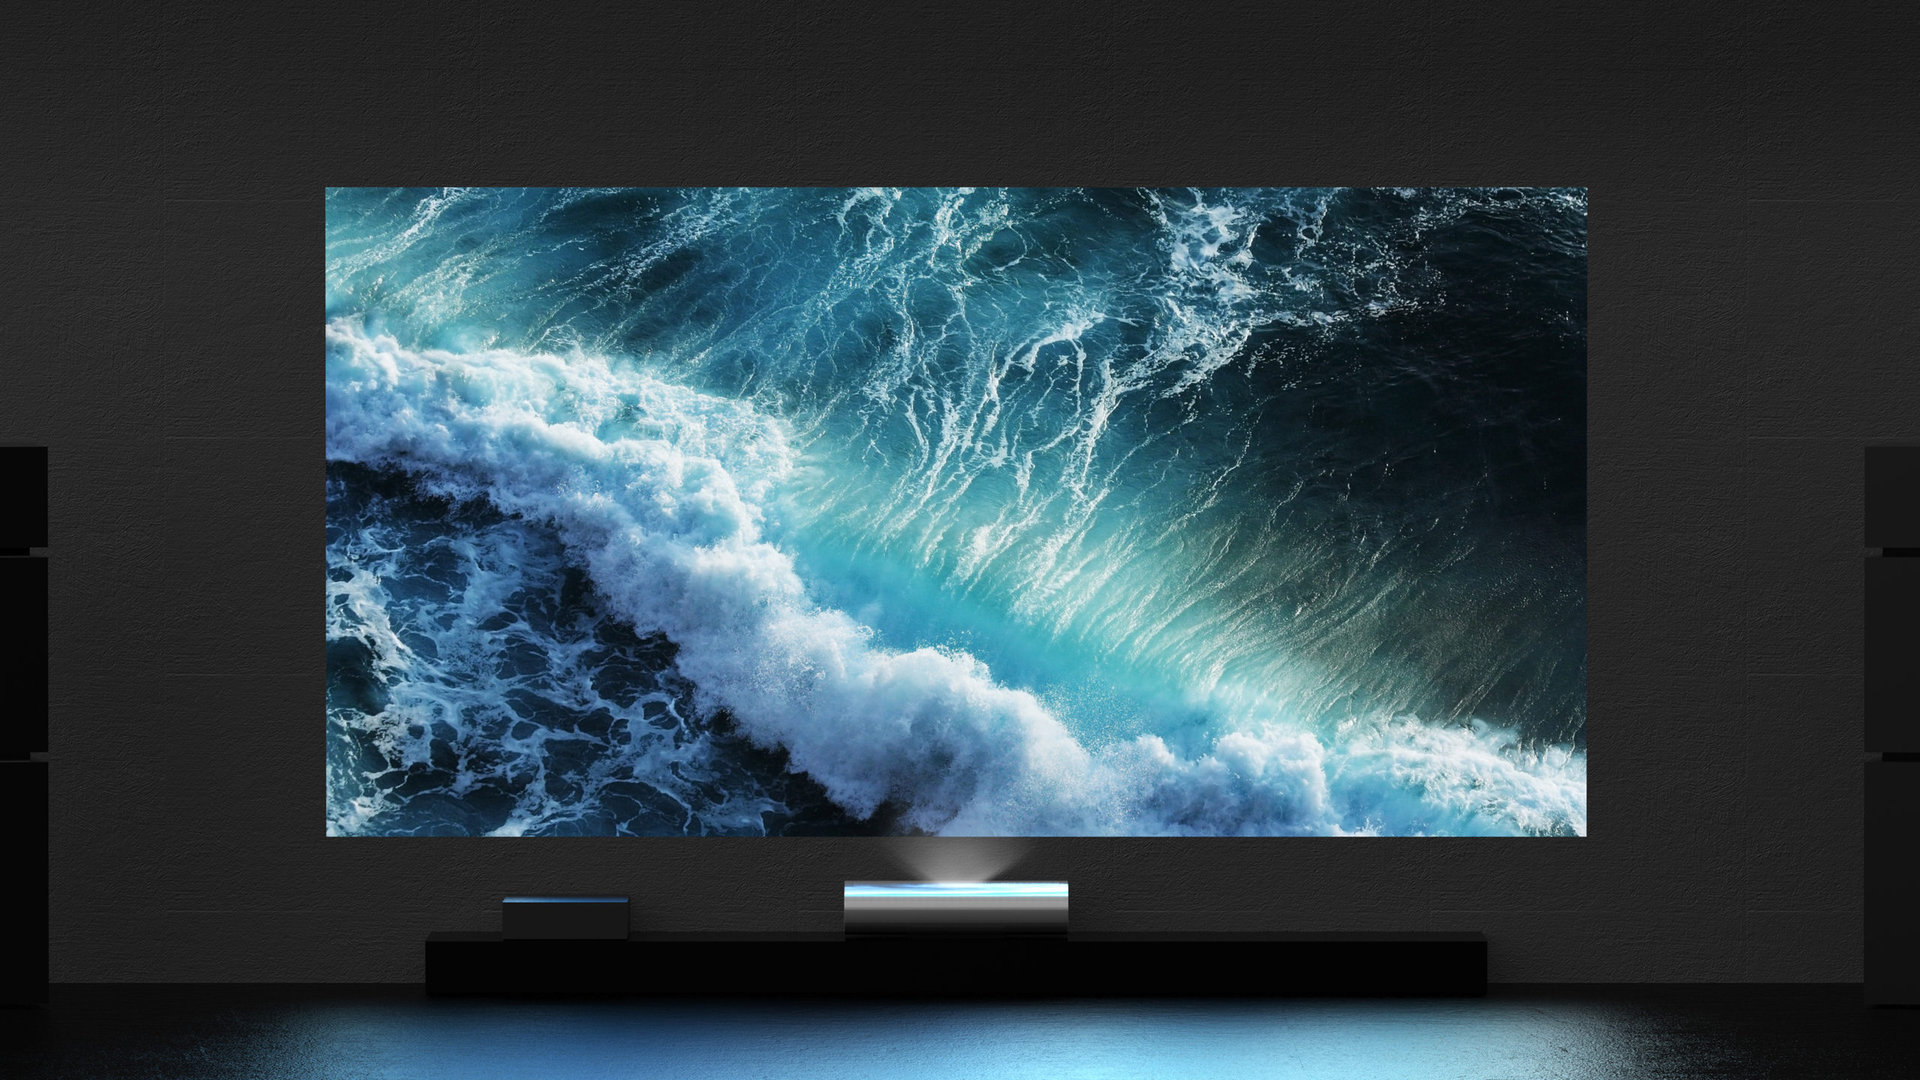 Samsung Premiere 8K brings full 8K TV experience